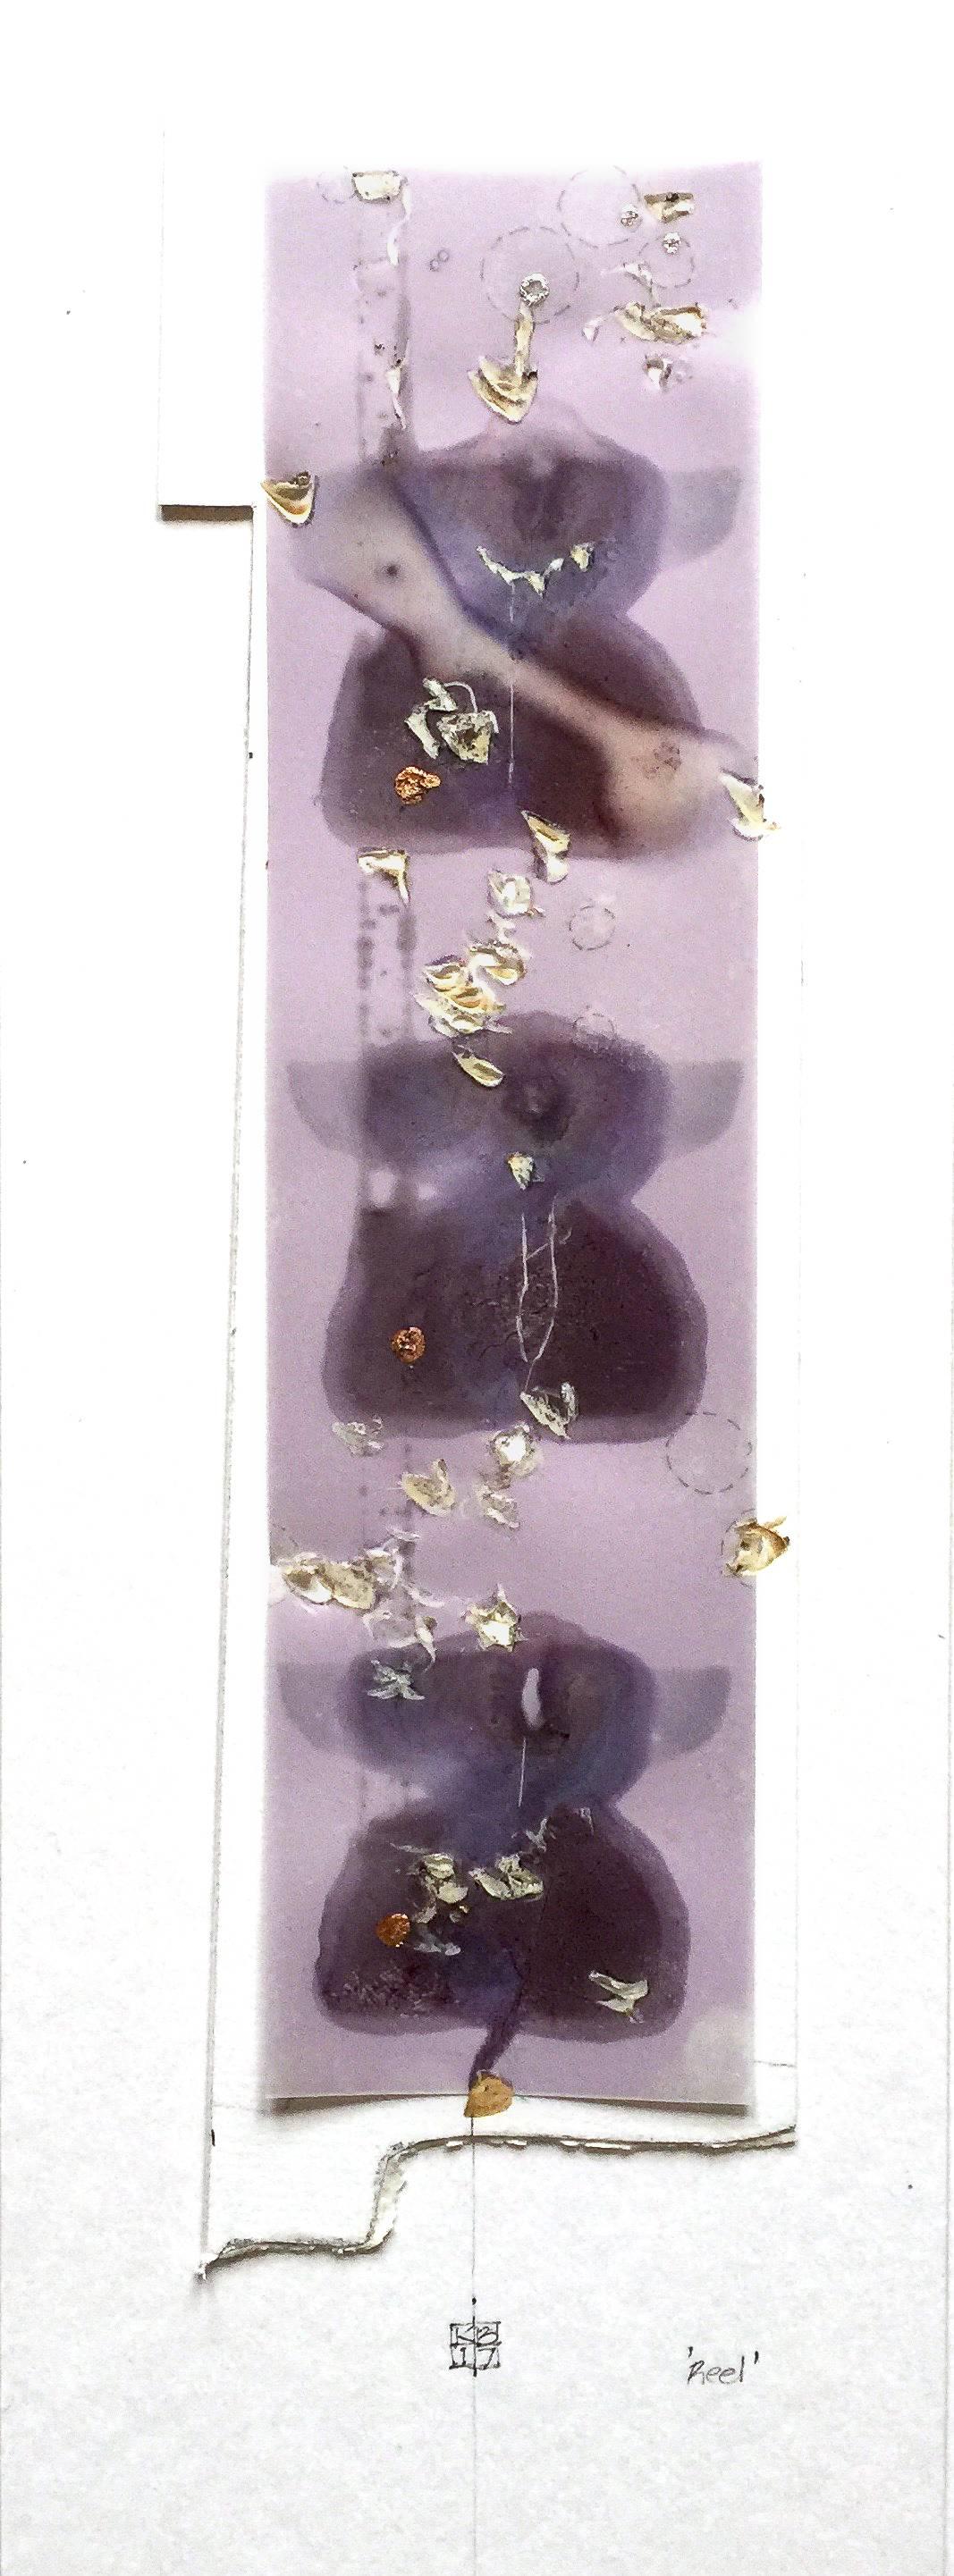 Reel, techniques mixtes, 10,16 x 15,24 cm. Impression abstraite violette